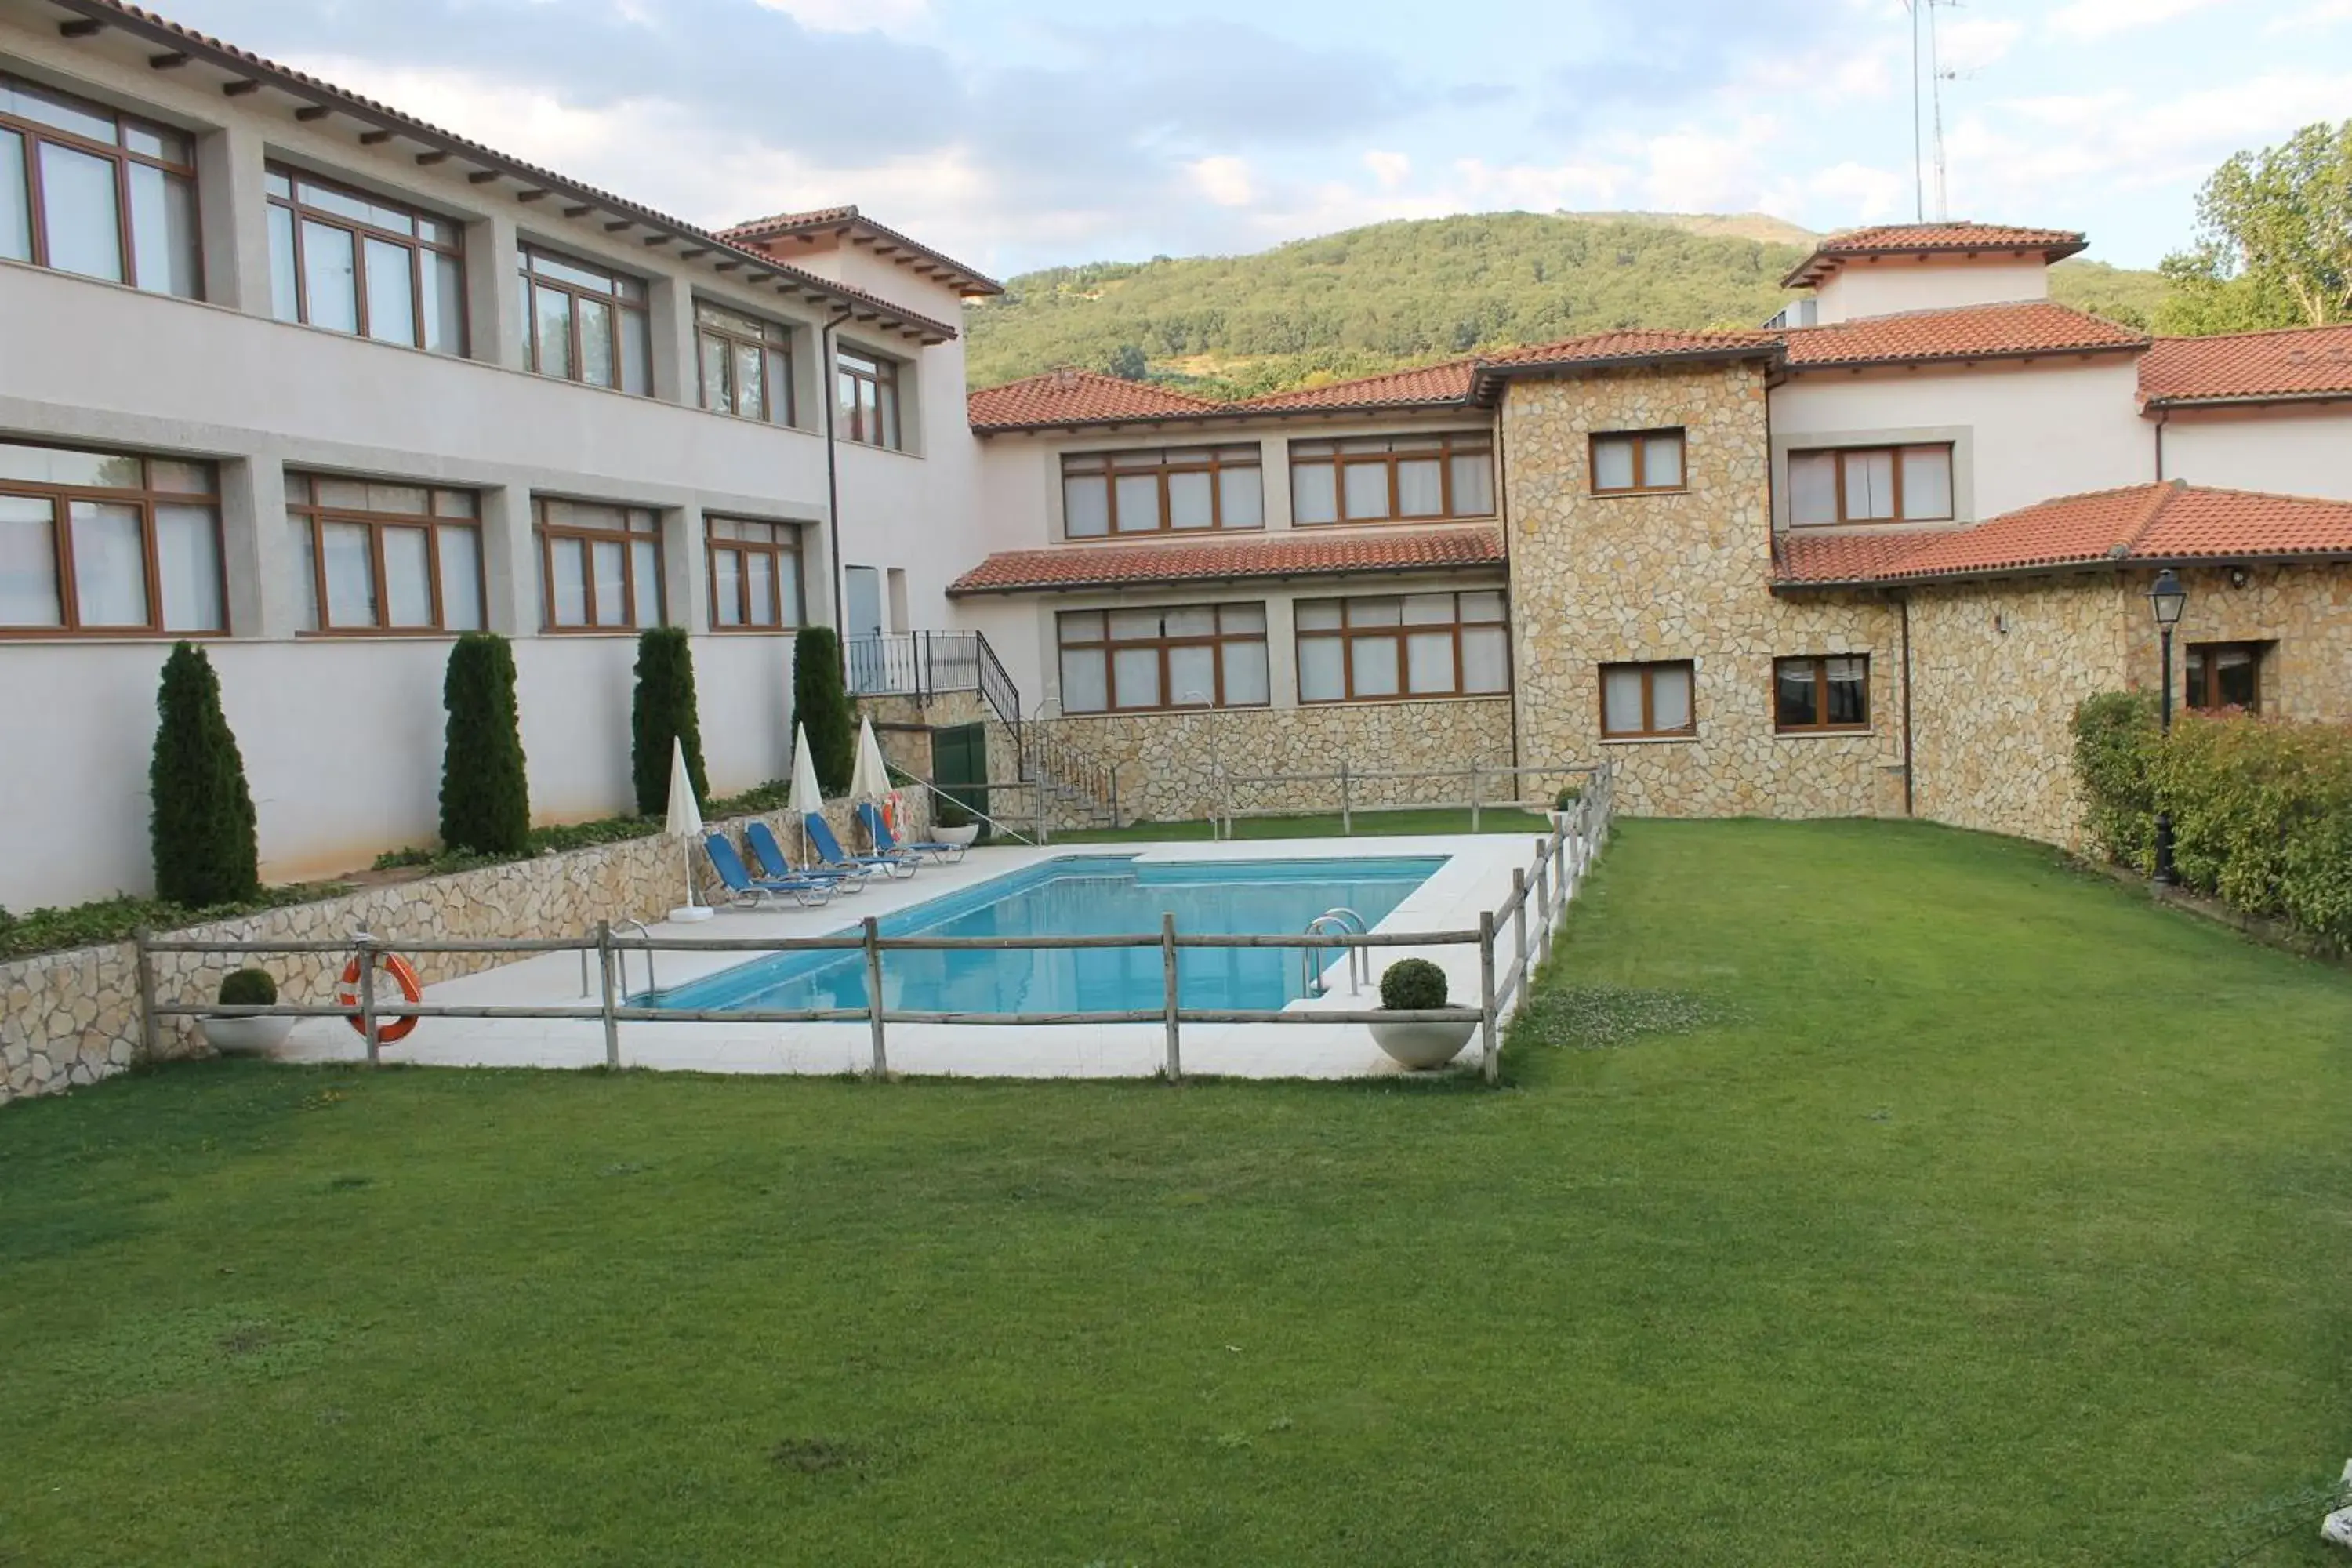 Property building, Swimming Pool in Mirador de La Portilla